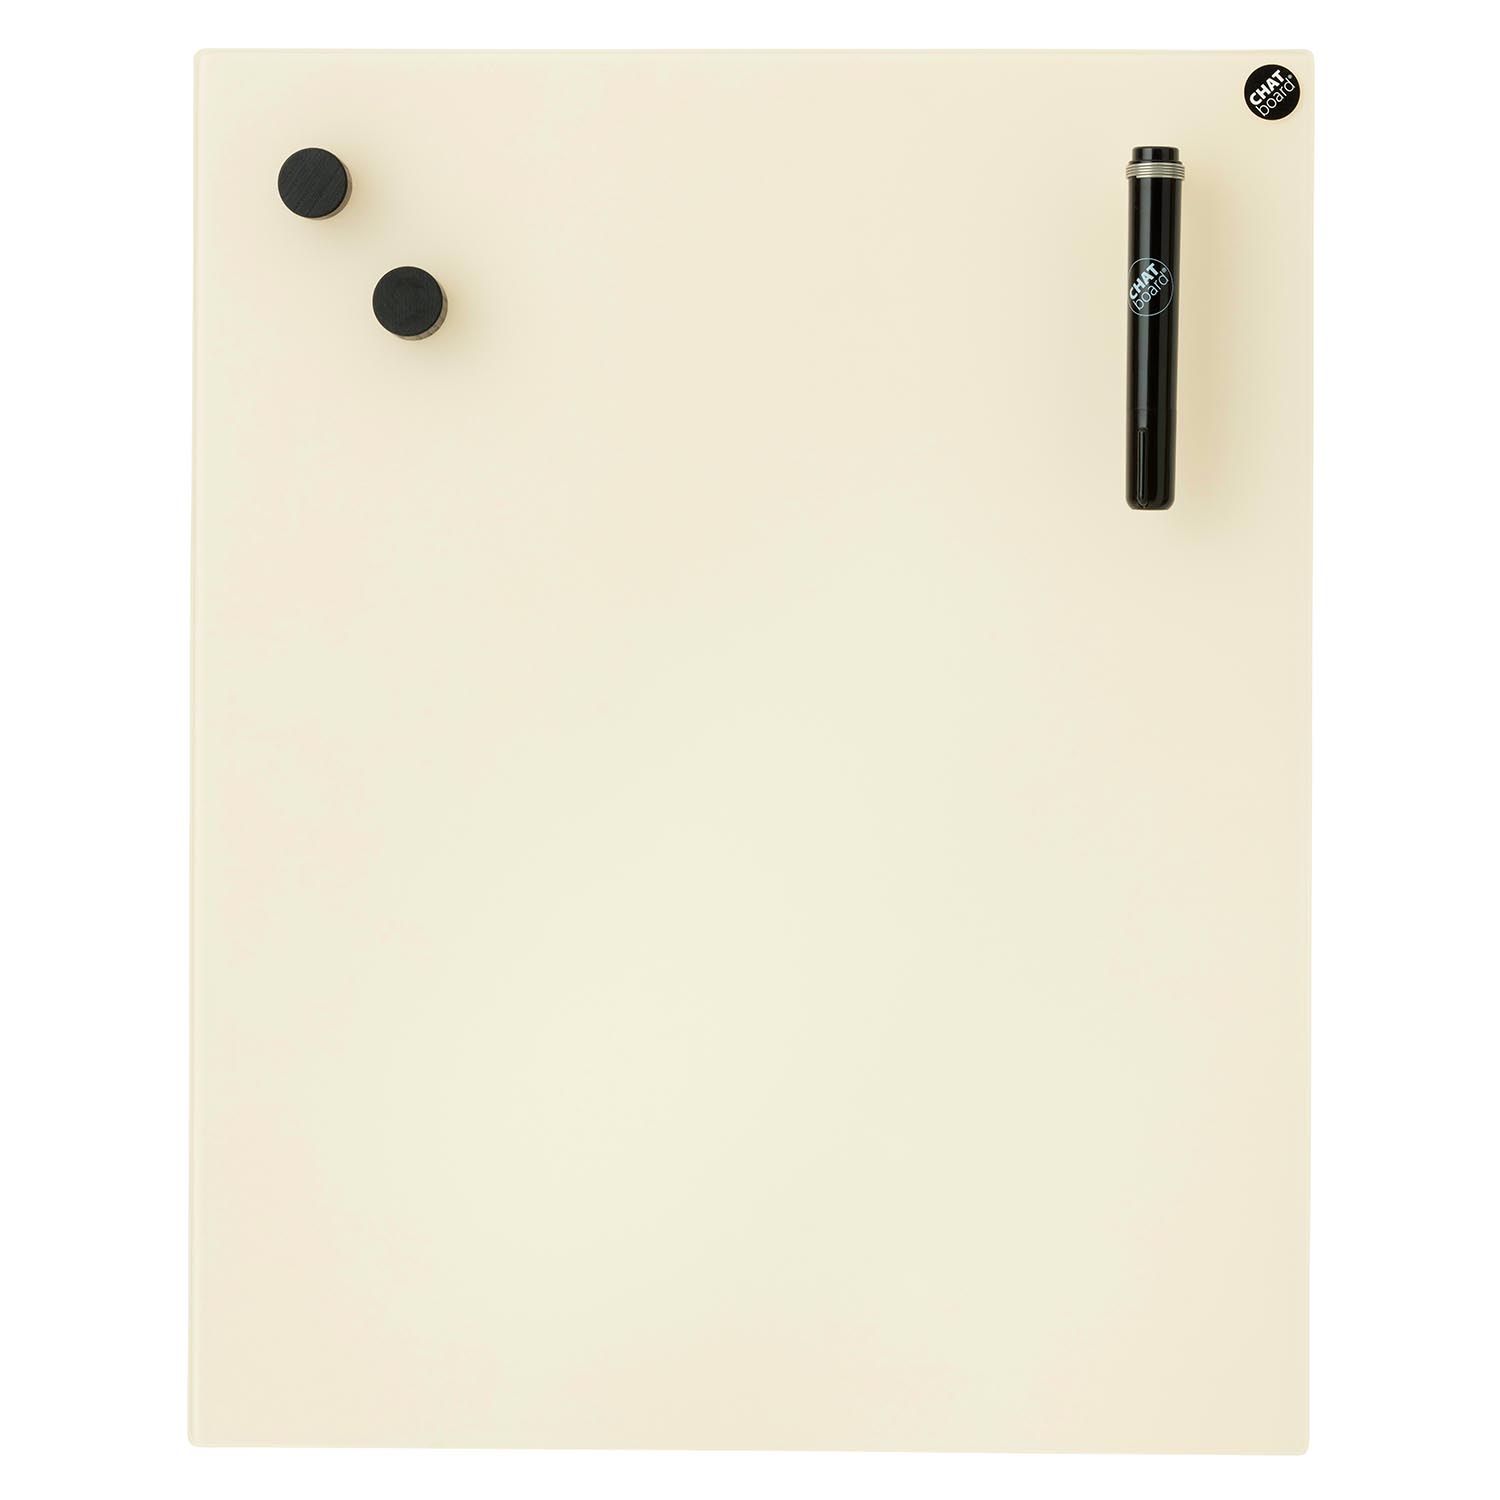 Classic Schreibtafel, Grösse 90 x 70 cm, Ausrichtung horizontal, Glas ink 40 mtin von Chat Board